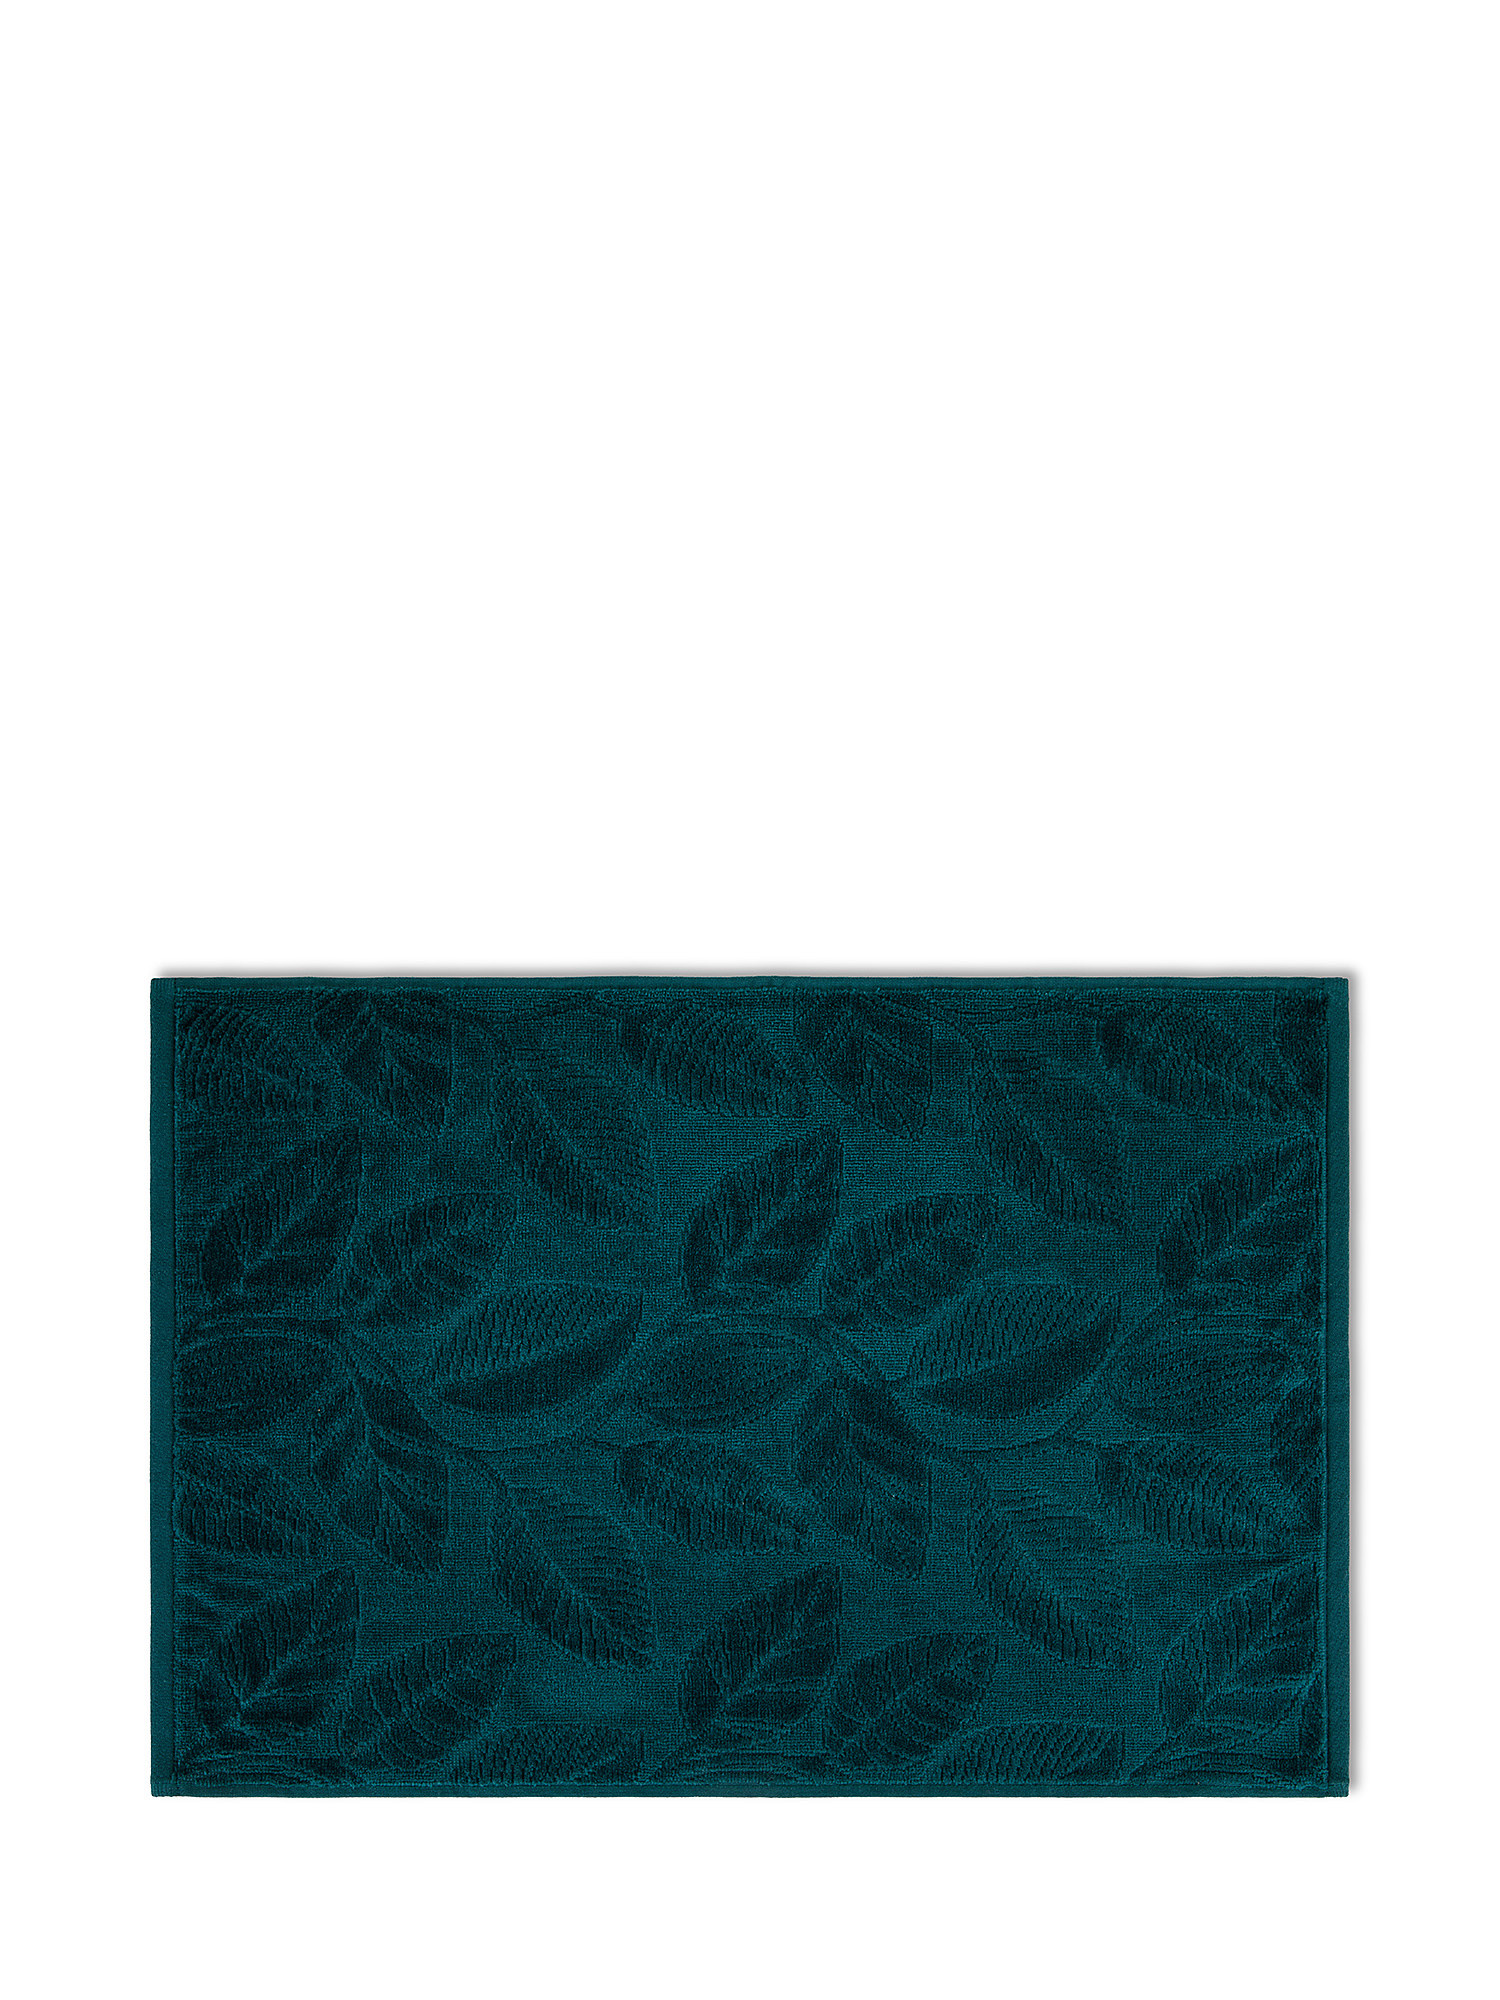 Asciugamano cotone velour motivo a fiori, Verde, large image number 1